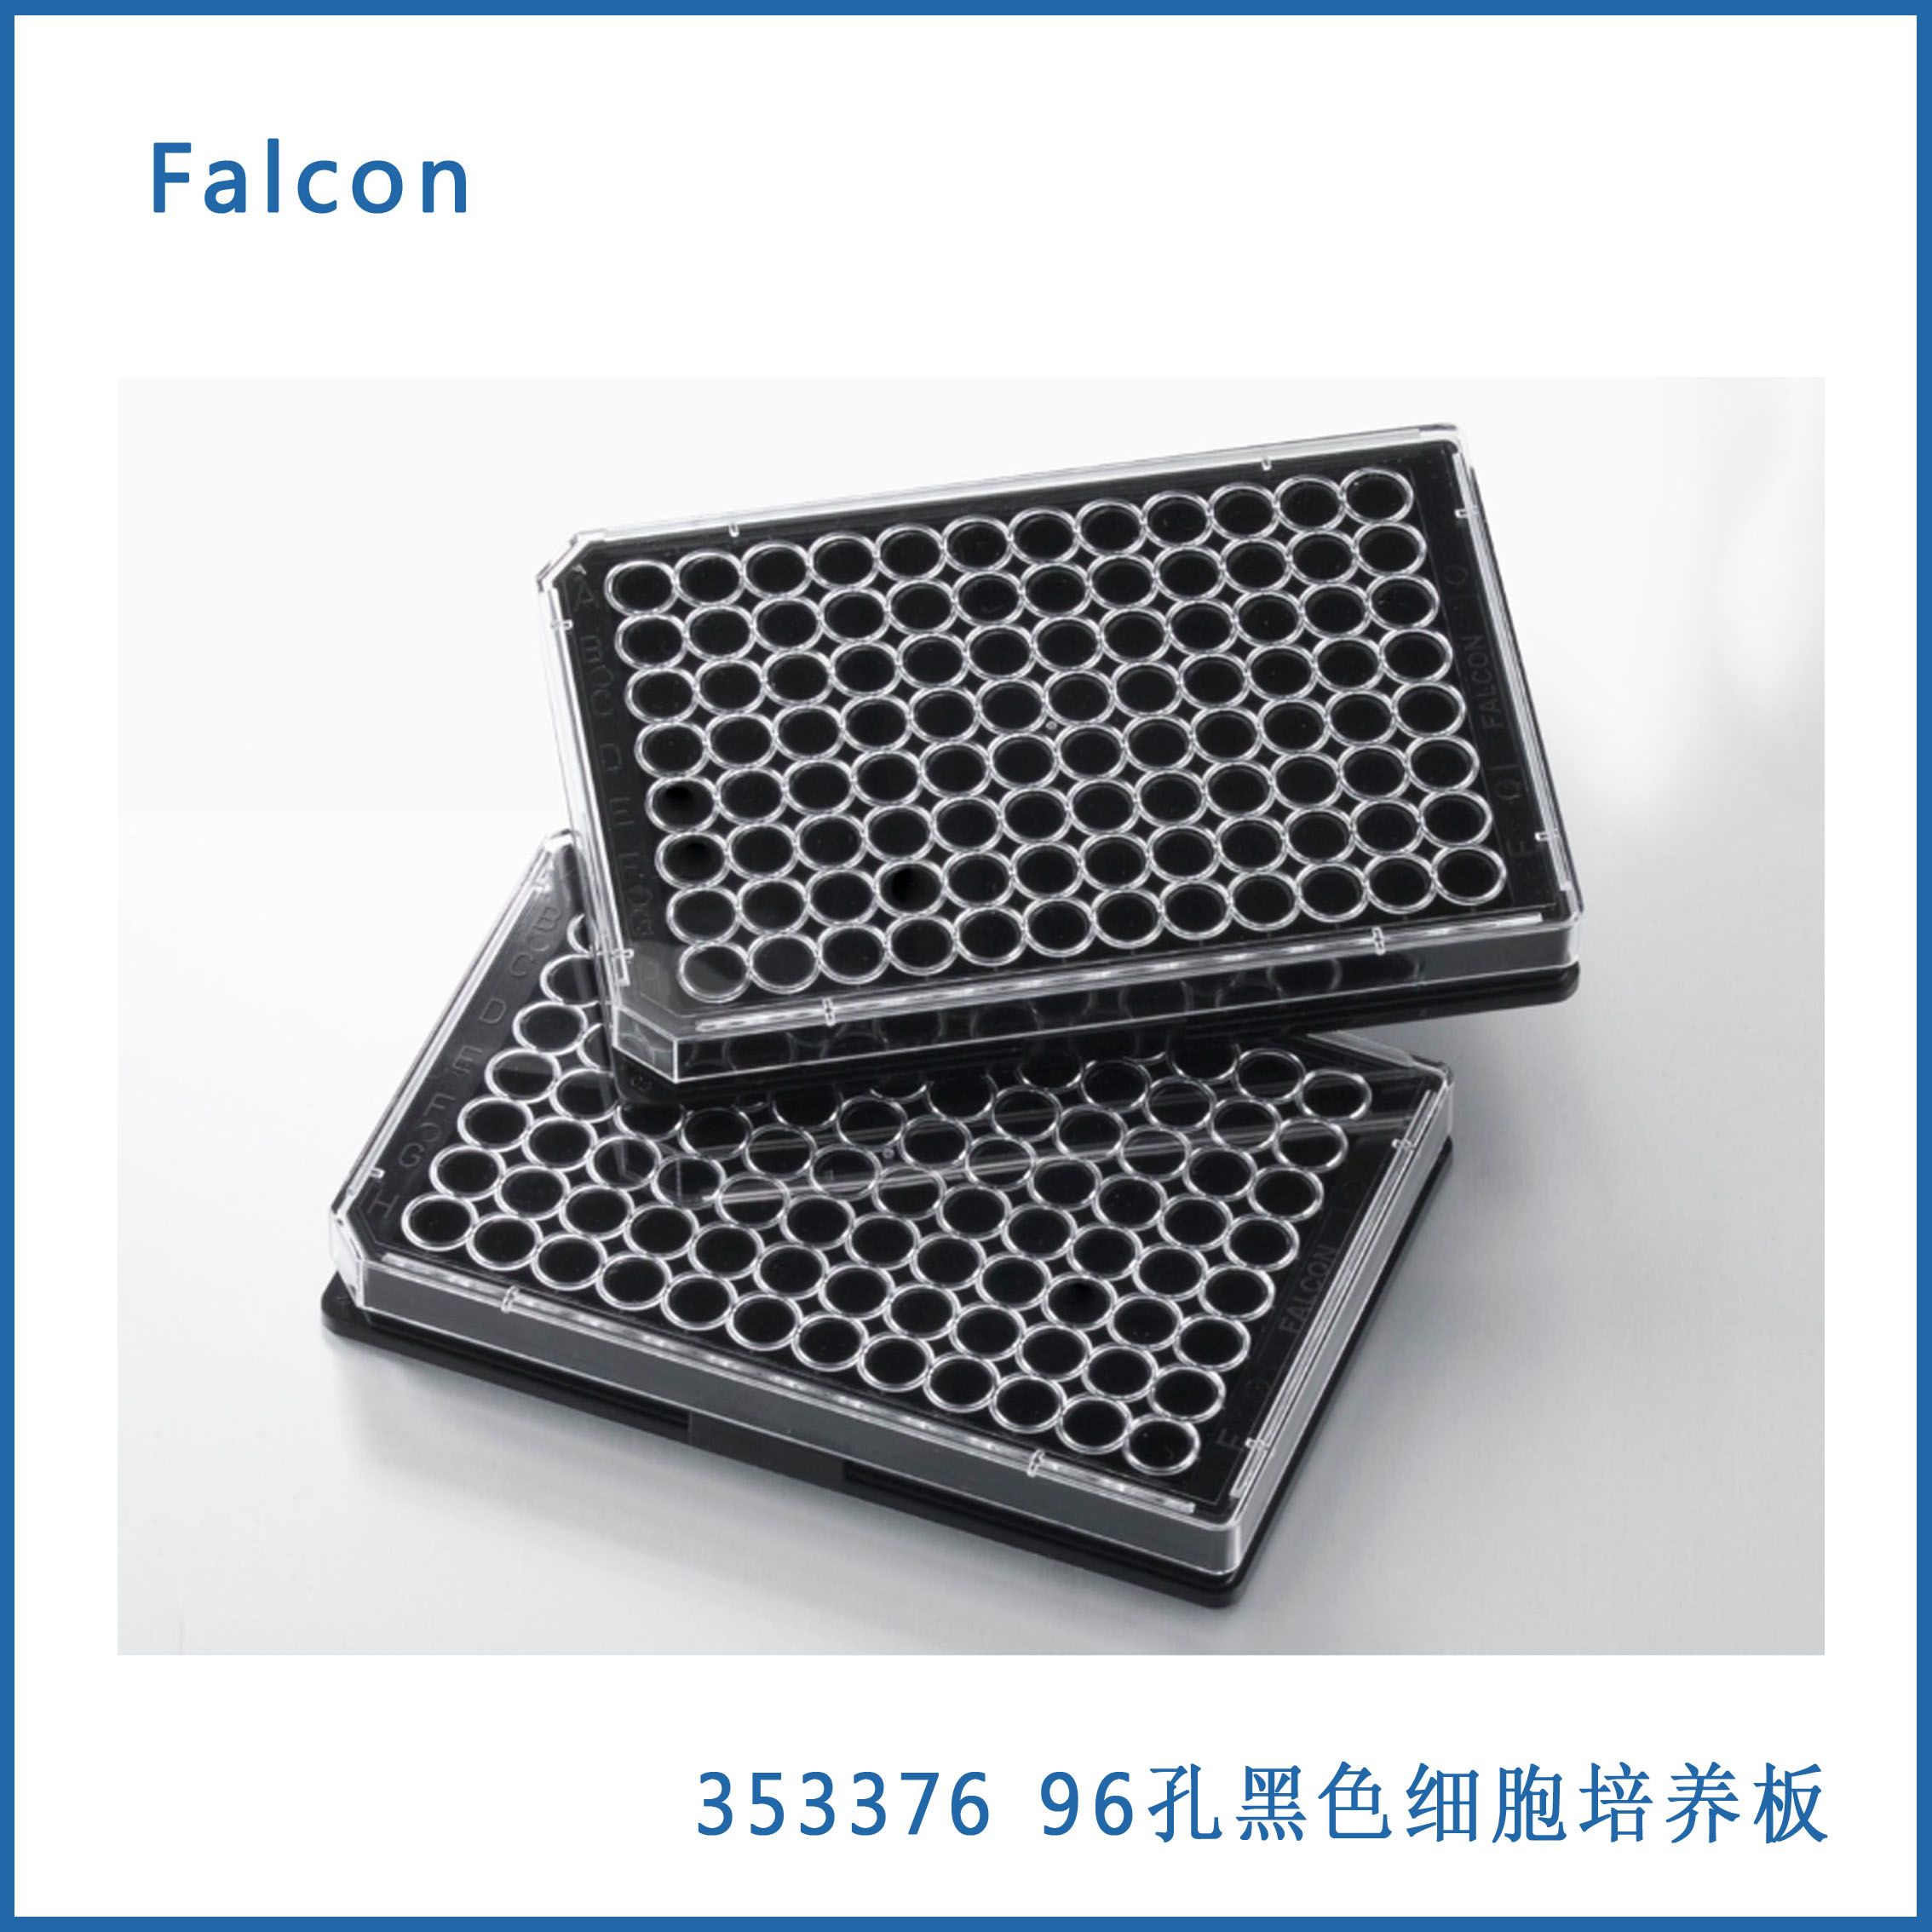 96孔细胞培养板 黑色 平底带盖 Faclon 353376 现货